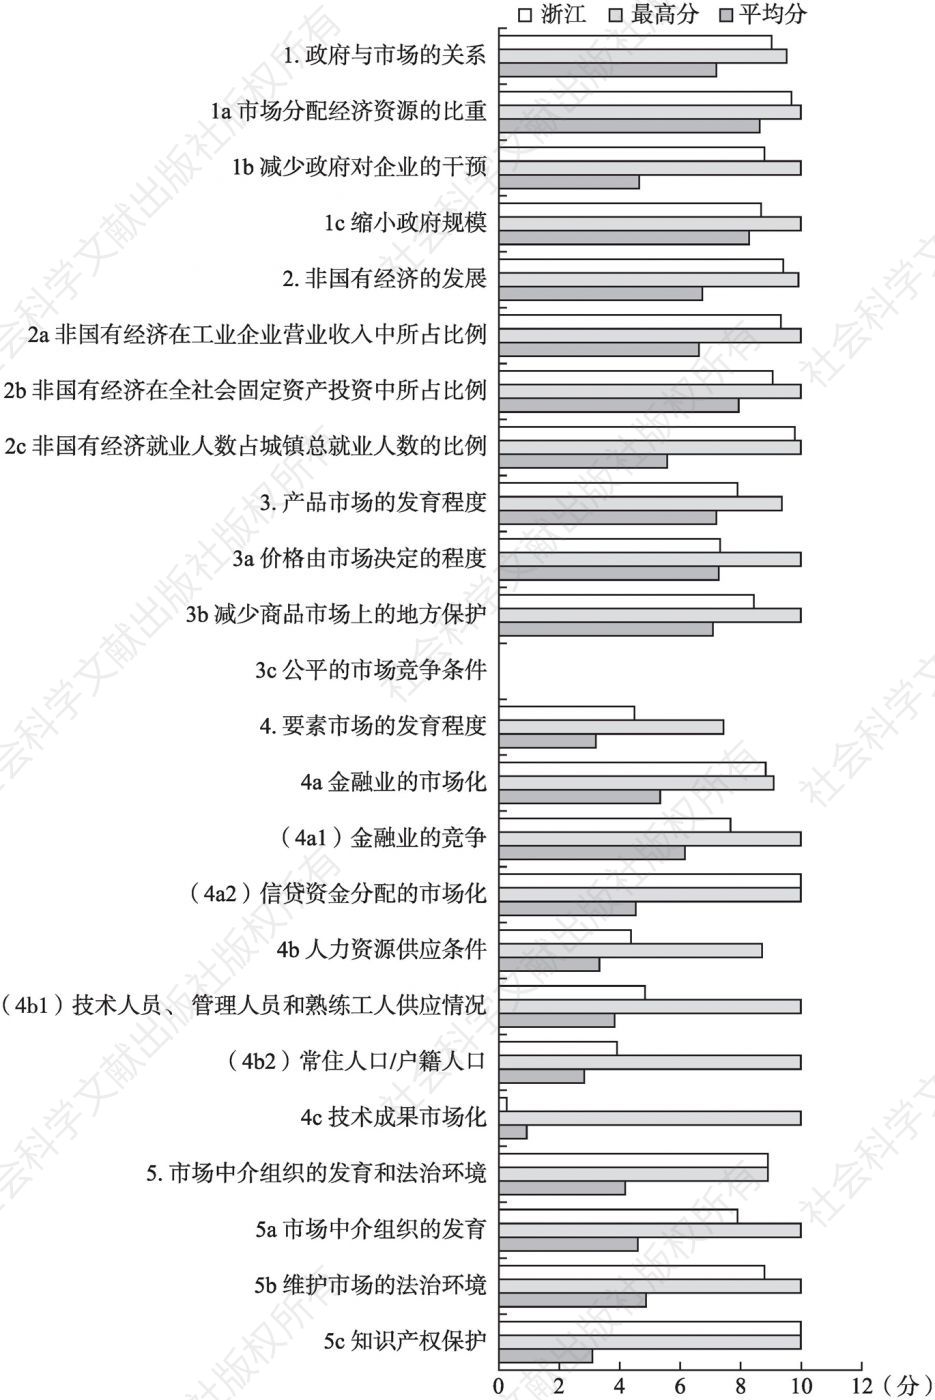 2016年浙江市场化各方面指数和分项指数与全国最高分及平均分的比较